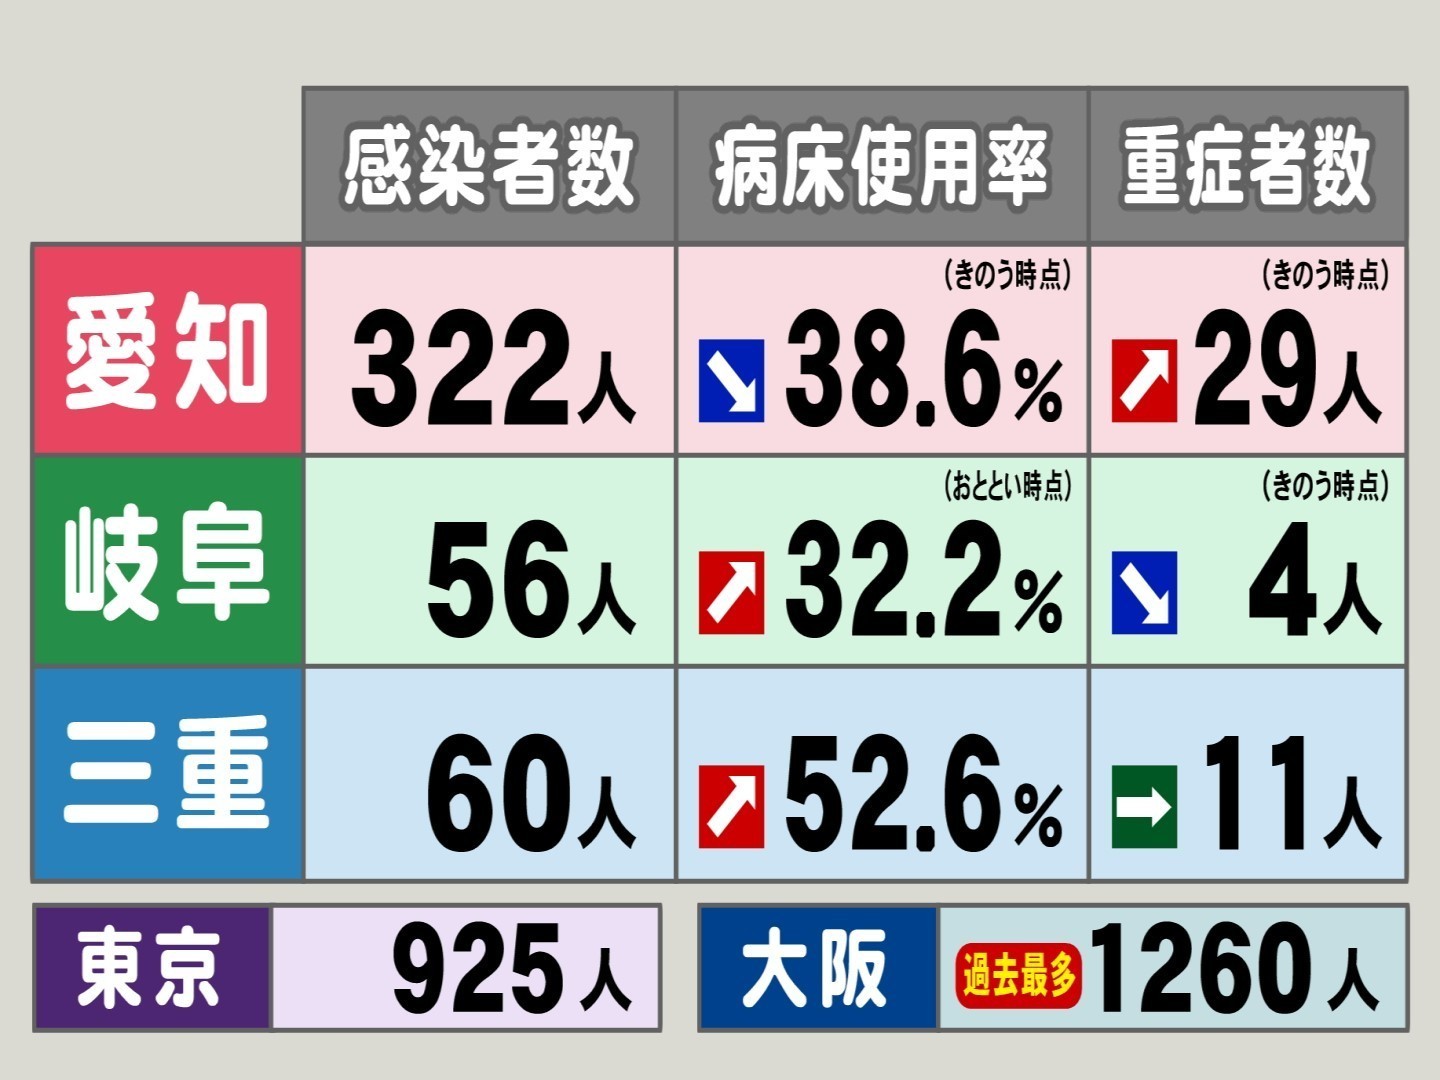 大阪では過去最多1260人 東海3県の新型コロナ感染者数 病床使用率 重症者数 三重の使用率依然高く 東海テレビnews